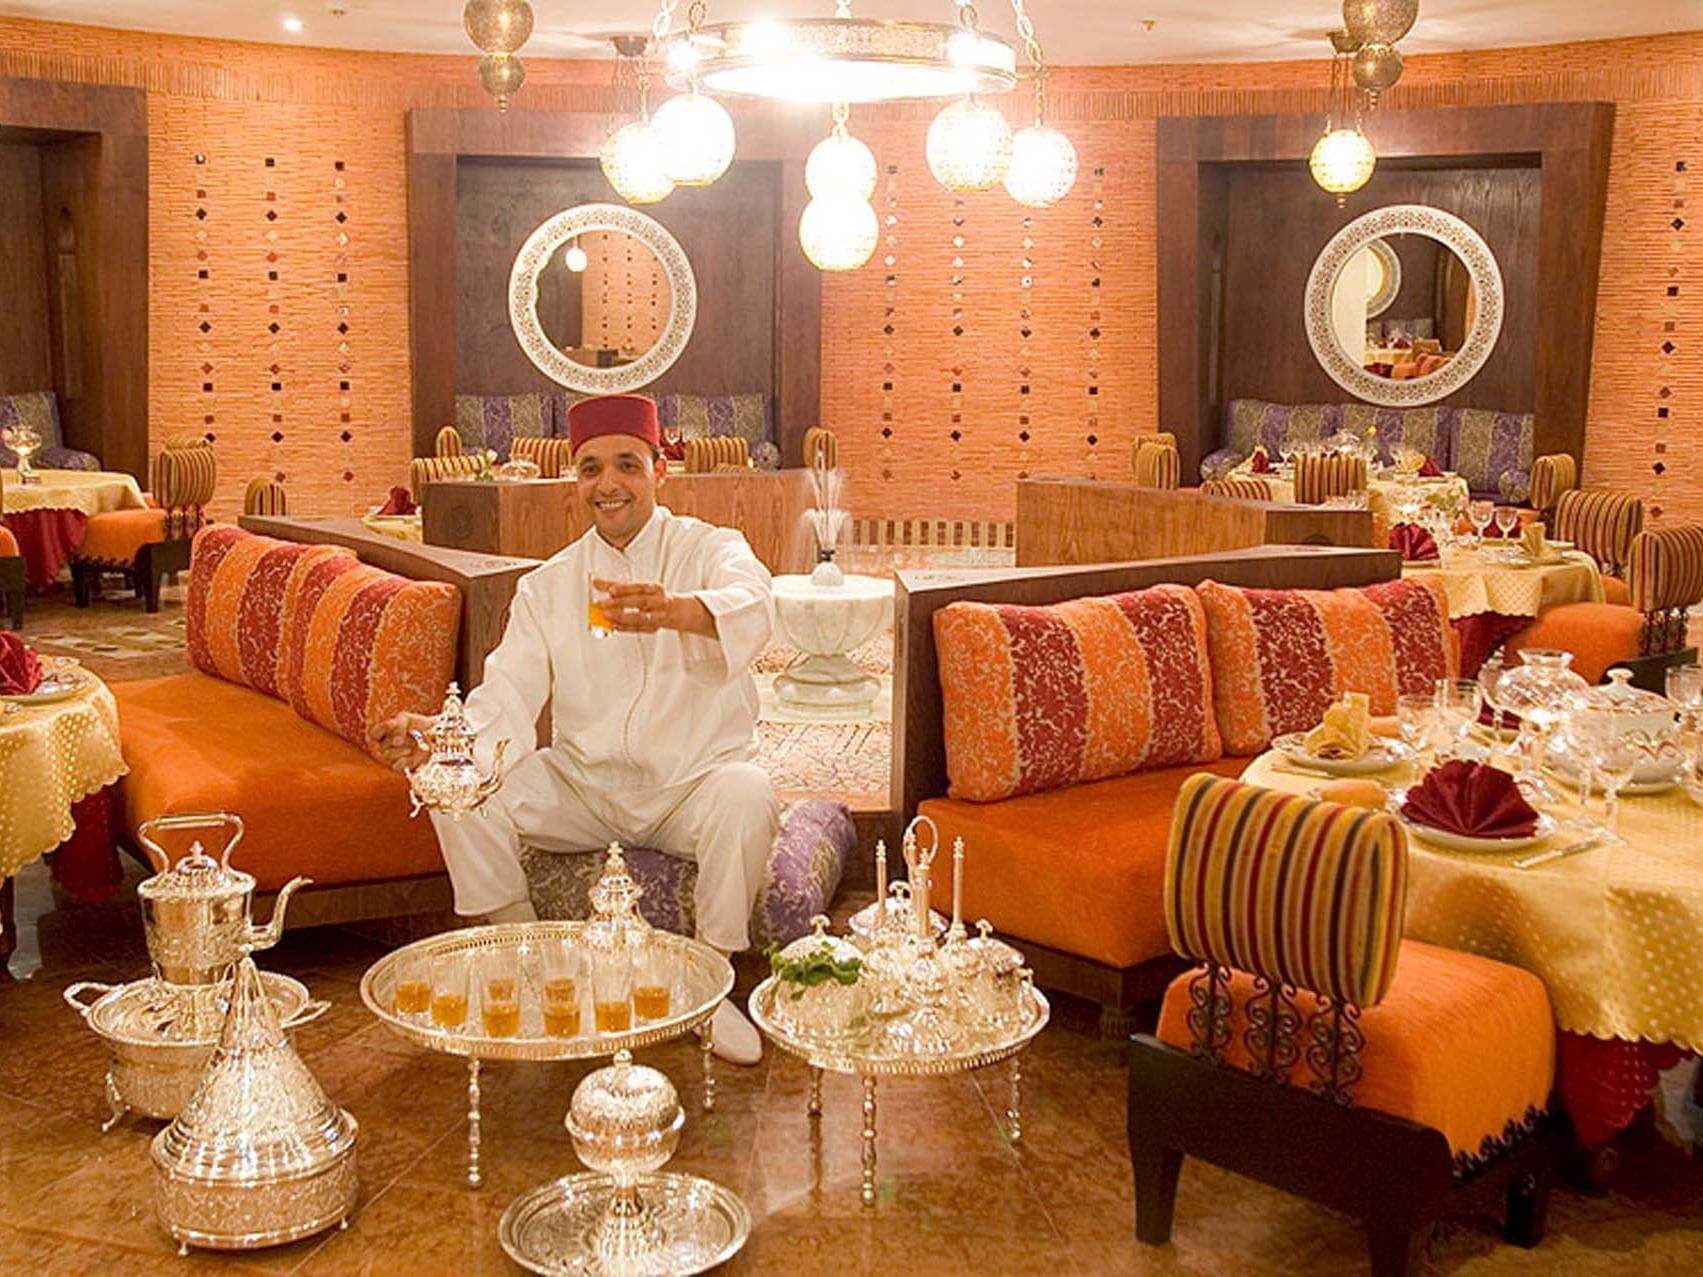 Comfy Sofas in Dining Area - Farah Casablanca Hotel